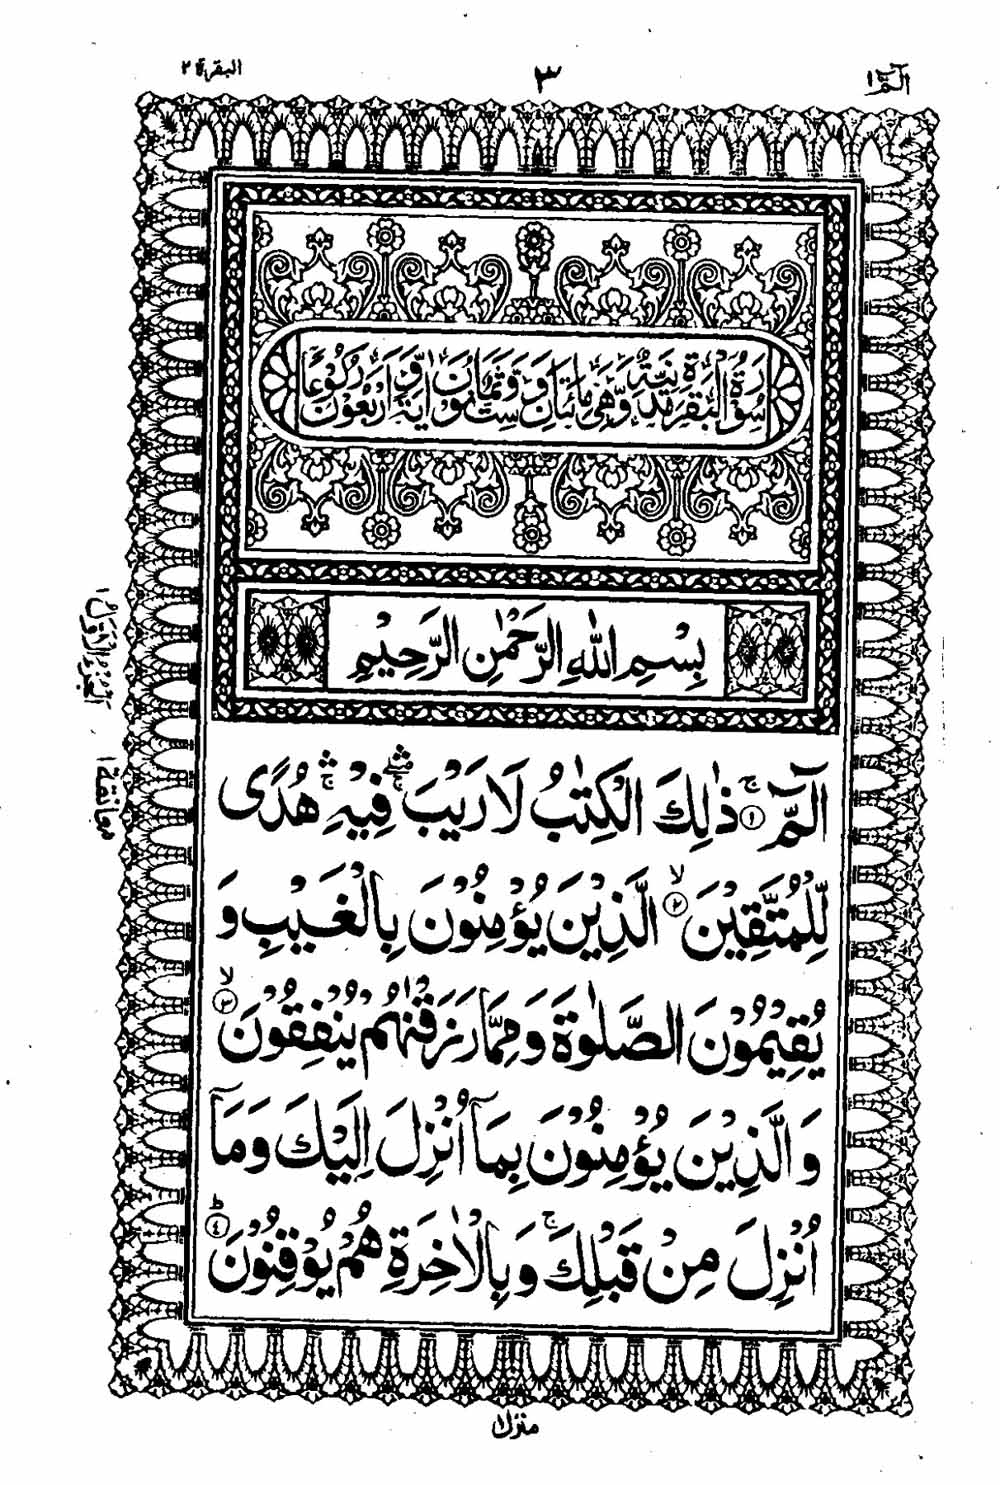 Read 16 Lines Al Quran Taj Company Part 1 Page No 4, Practice Quran